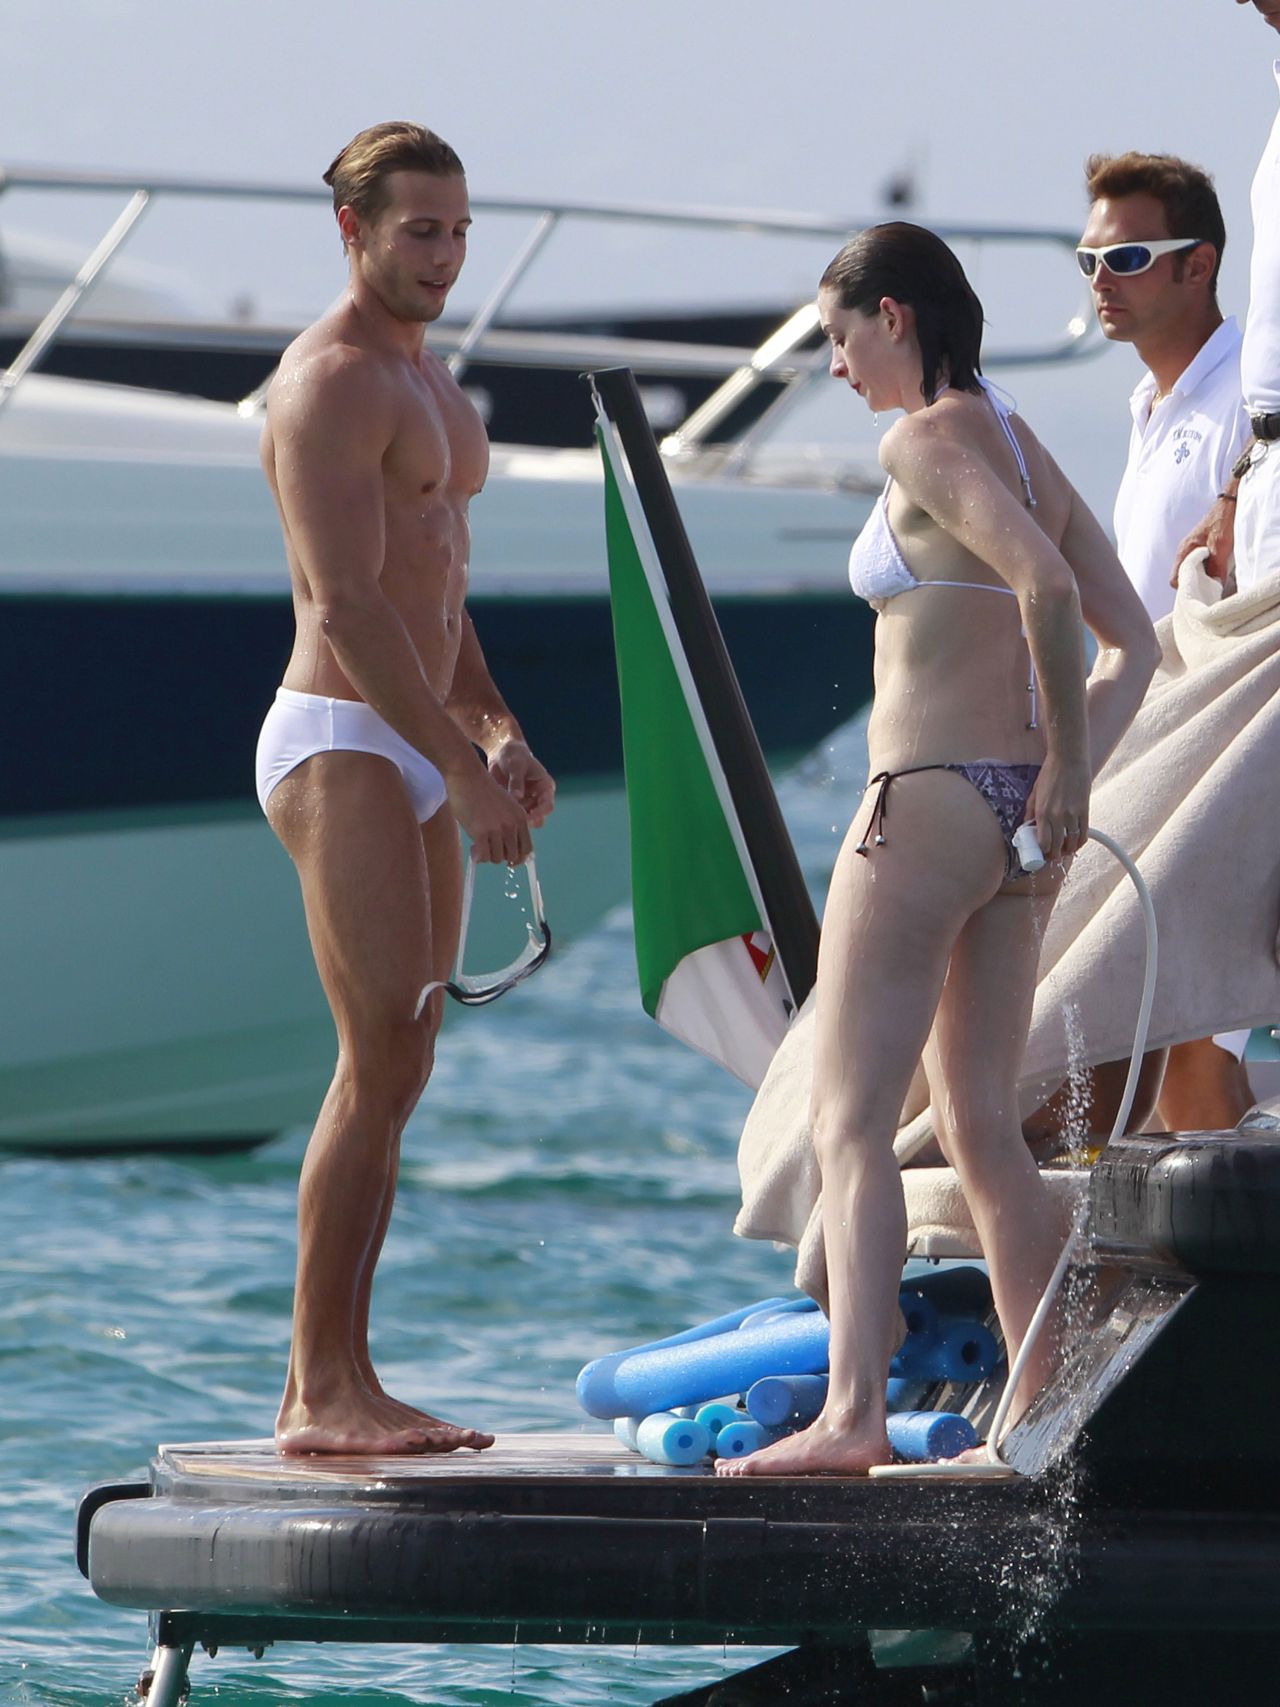 Anne Hathaway in a Bikini on a Yacht in Spain, August 2015 *